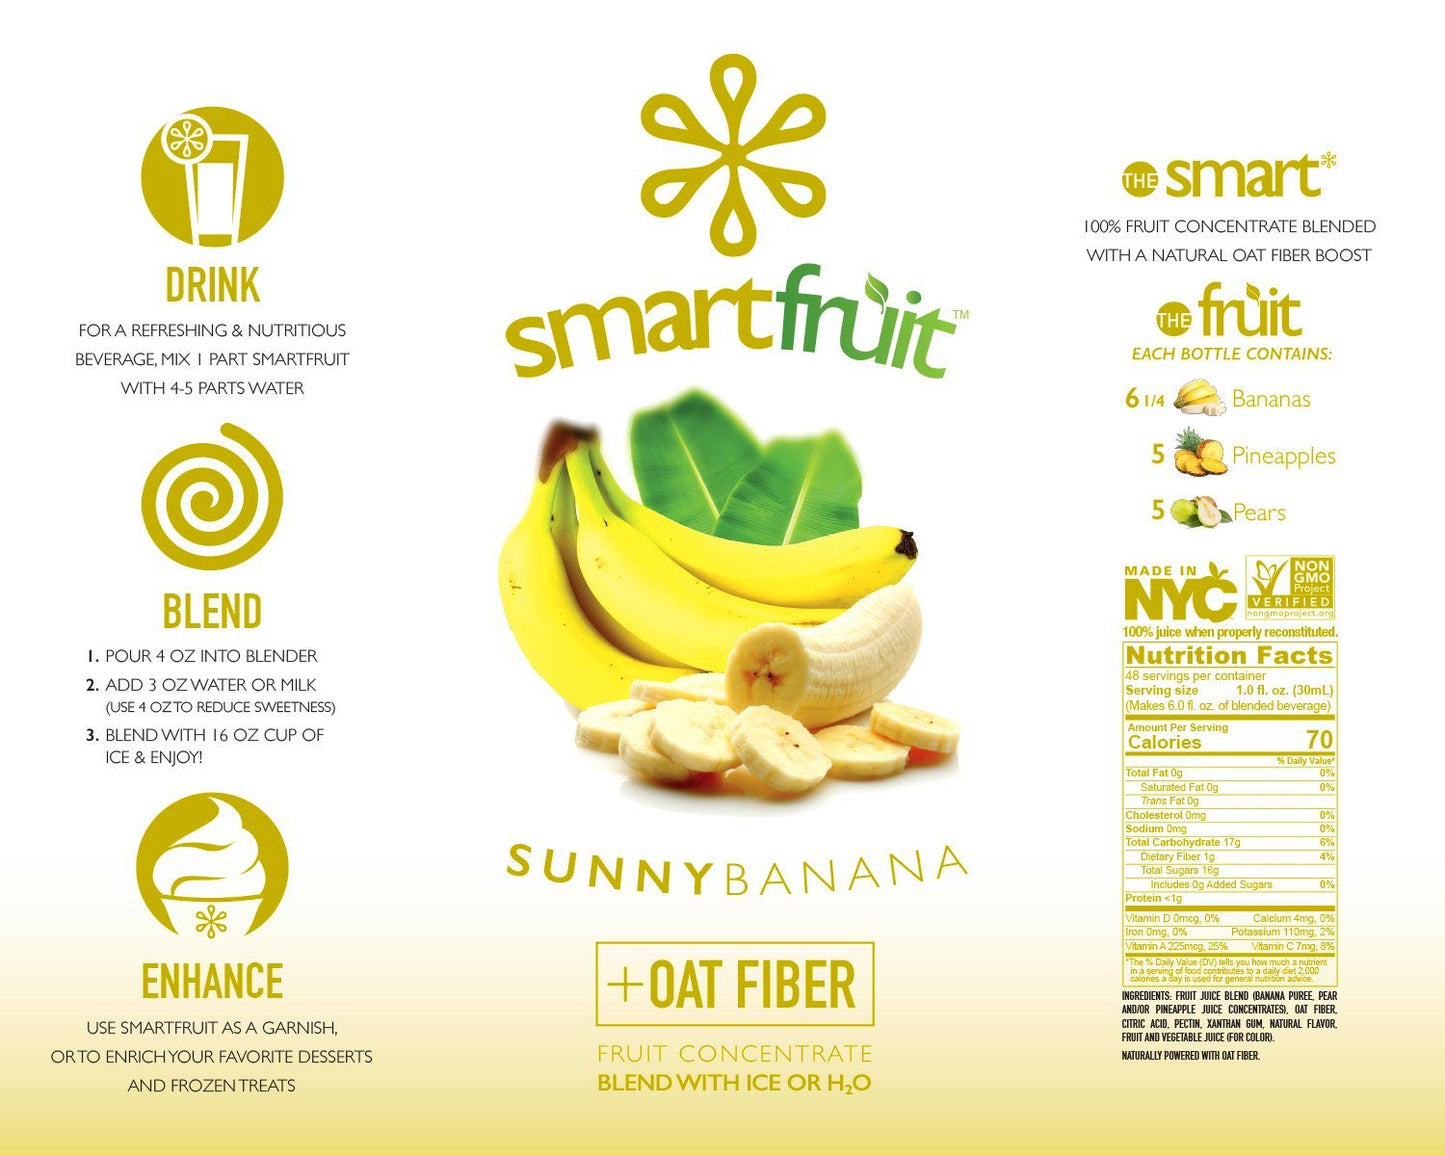 Sunny Banana SmartFruit smoothie mix 48-oz bottle